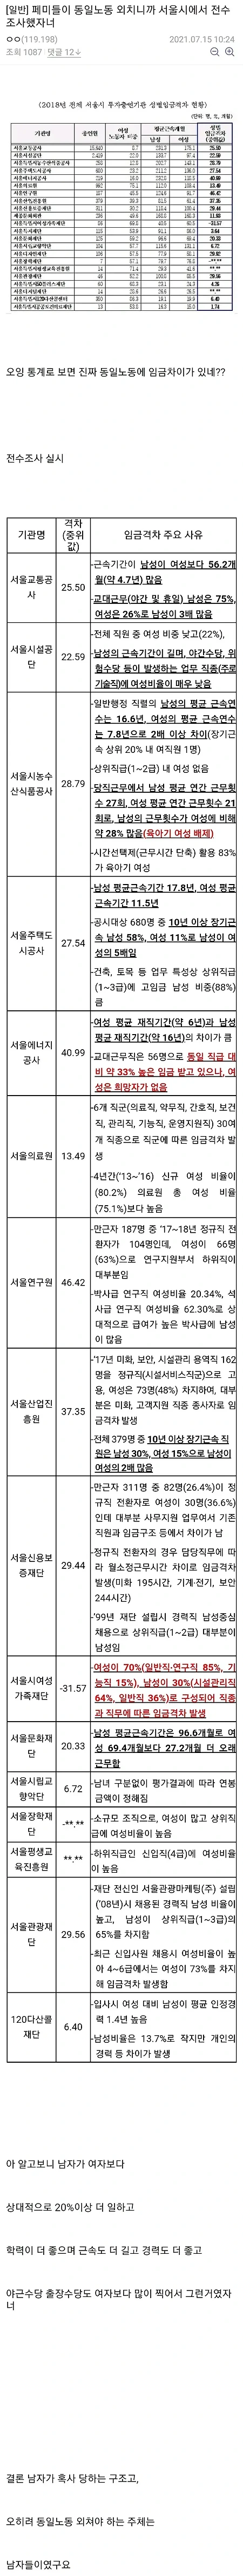 2018 서울공기업 남녀성별임금격차 조사결과